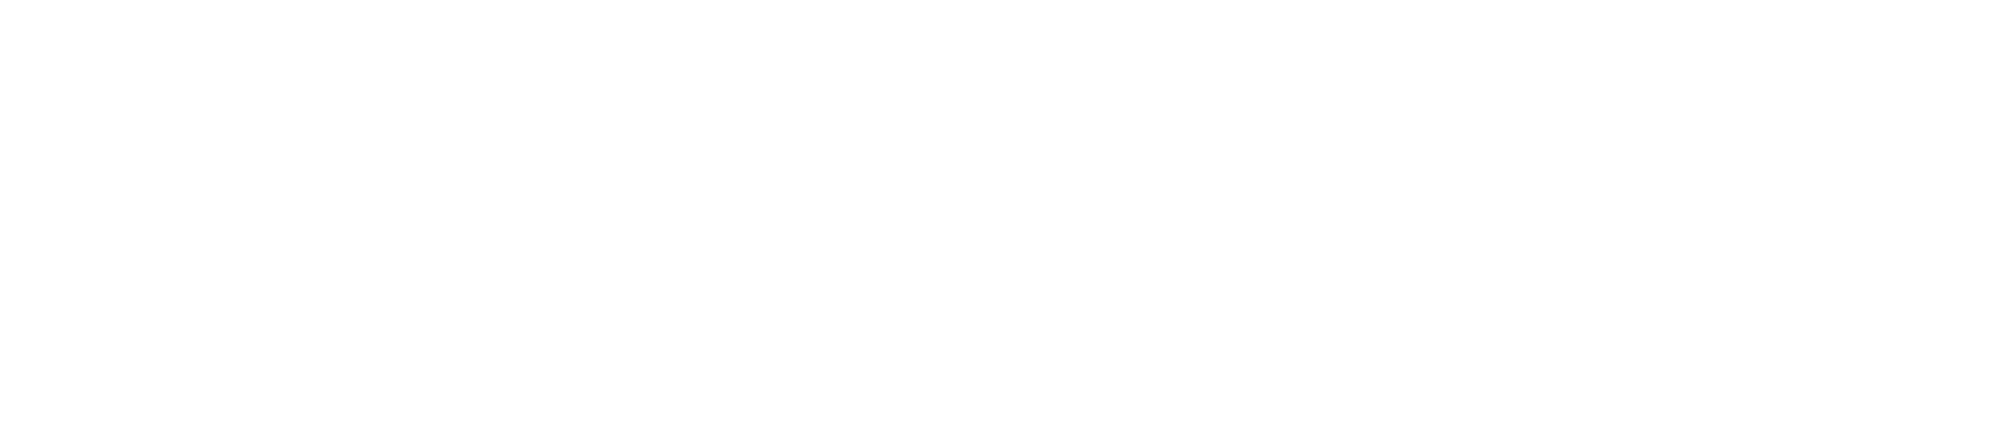 unitsystem-UG-logo-white